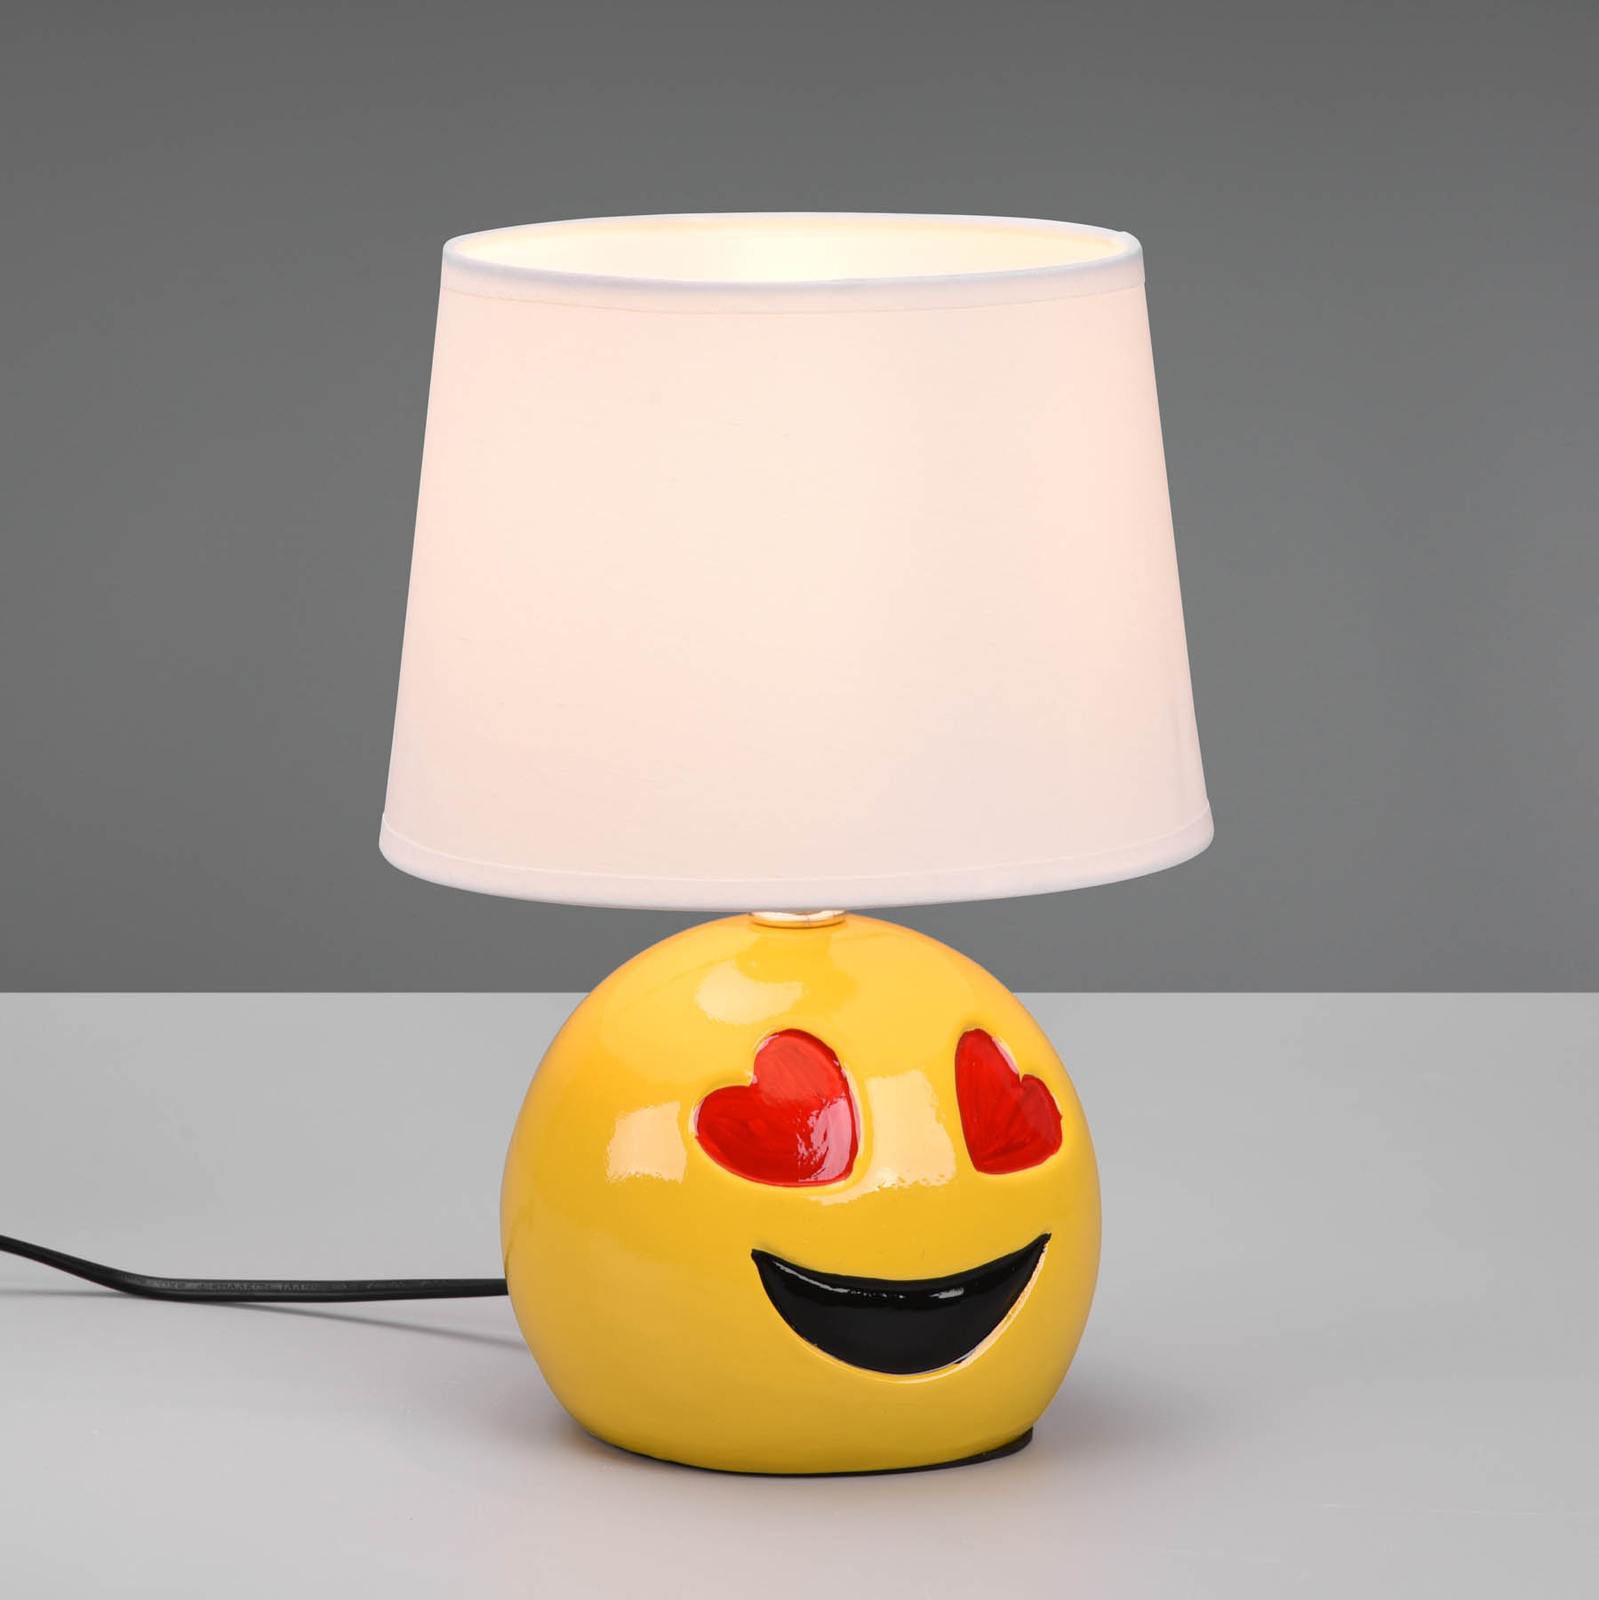 Tafellamp Lovely met Smiley, stoffen kap wit